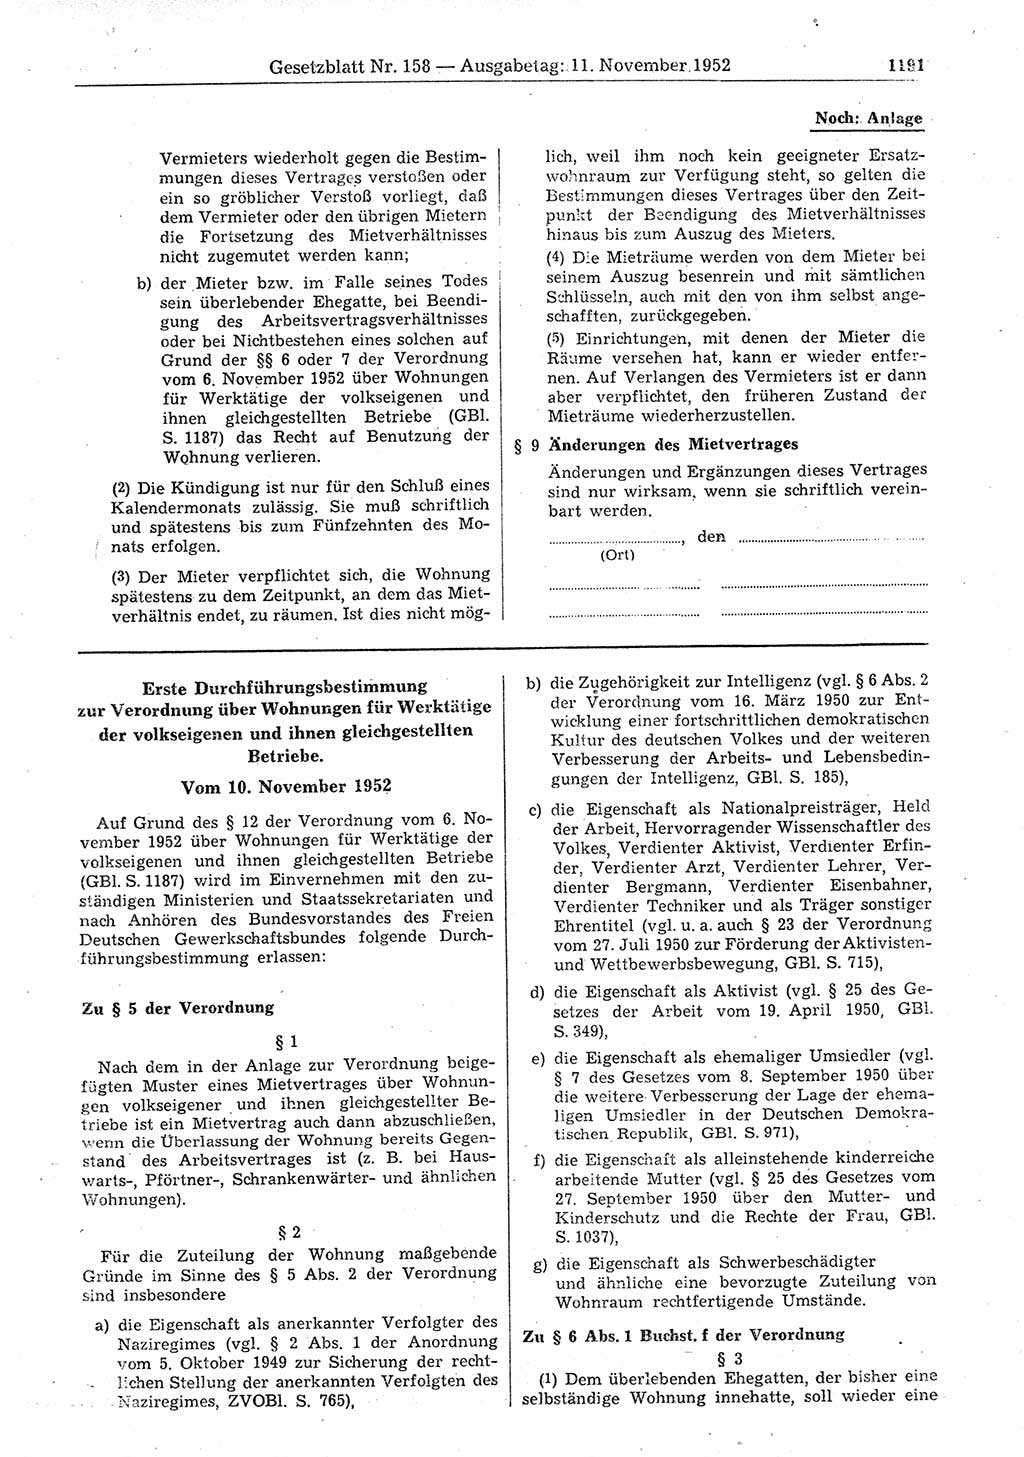 Gesetzblatt (GBl.) der Deutschen Demokratischen Republik (DDR) 1952, Seite 1191 (GBl. DDR 1952, S. 1191)